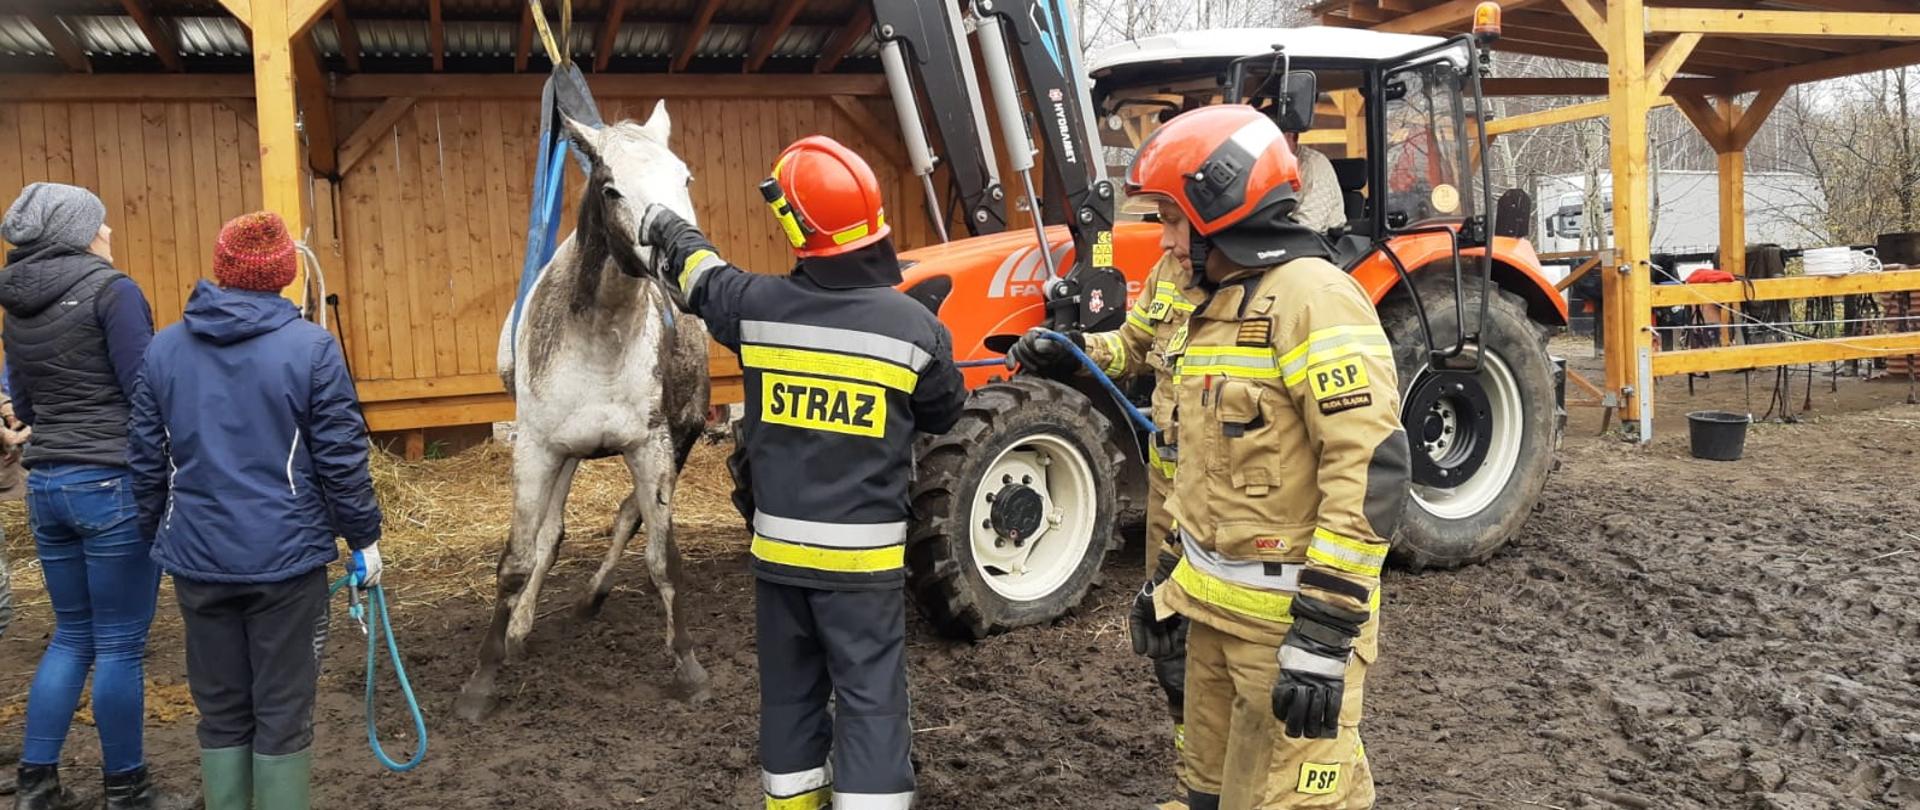 Ruda Śląska ul. Kingi, potrzeba transportu chorego konia do zagrody w celu zabezpieczenia i dalszych badań.